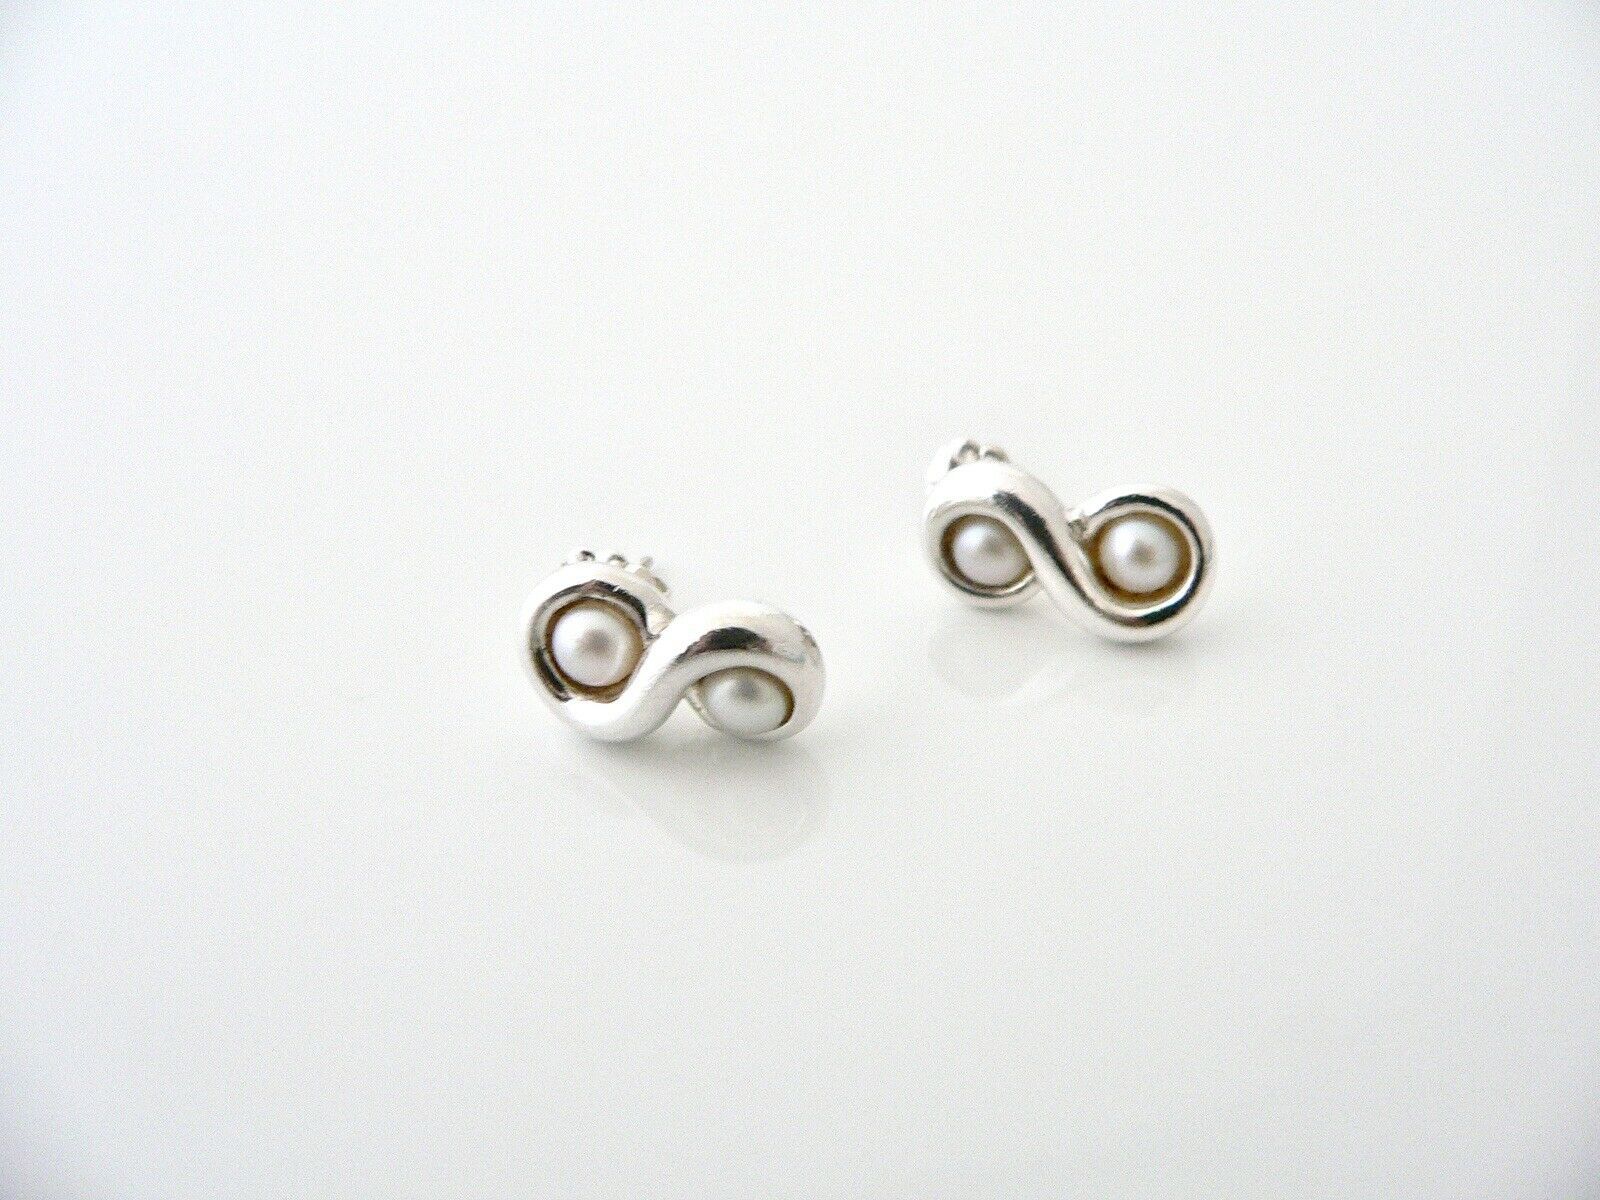 Tiffany & Co Infinity Pearl Earrings Studs Sterling Silver Gift Love Art T Co